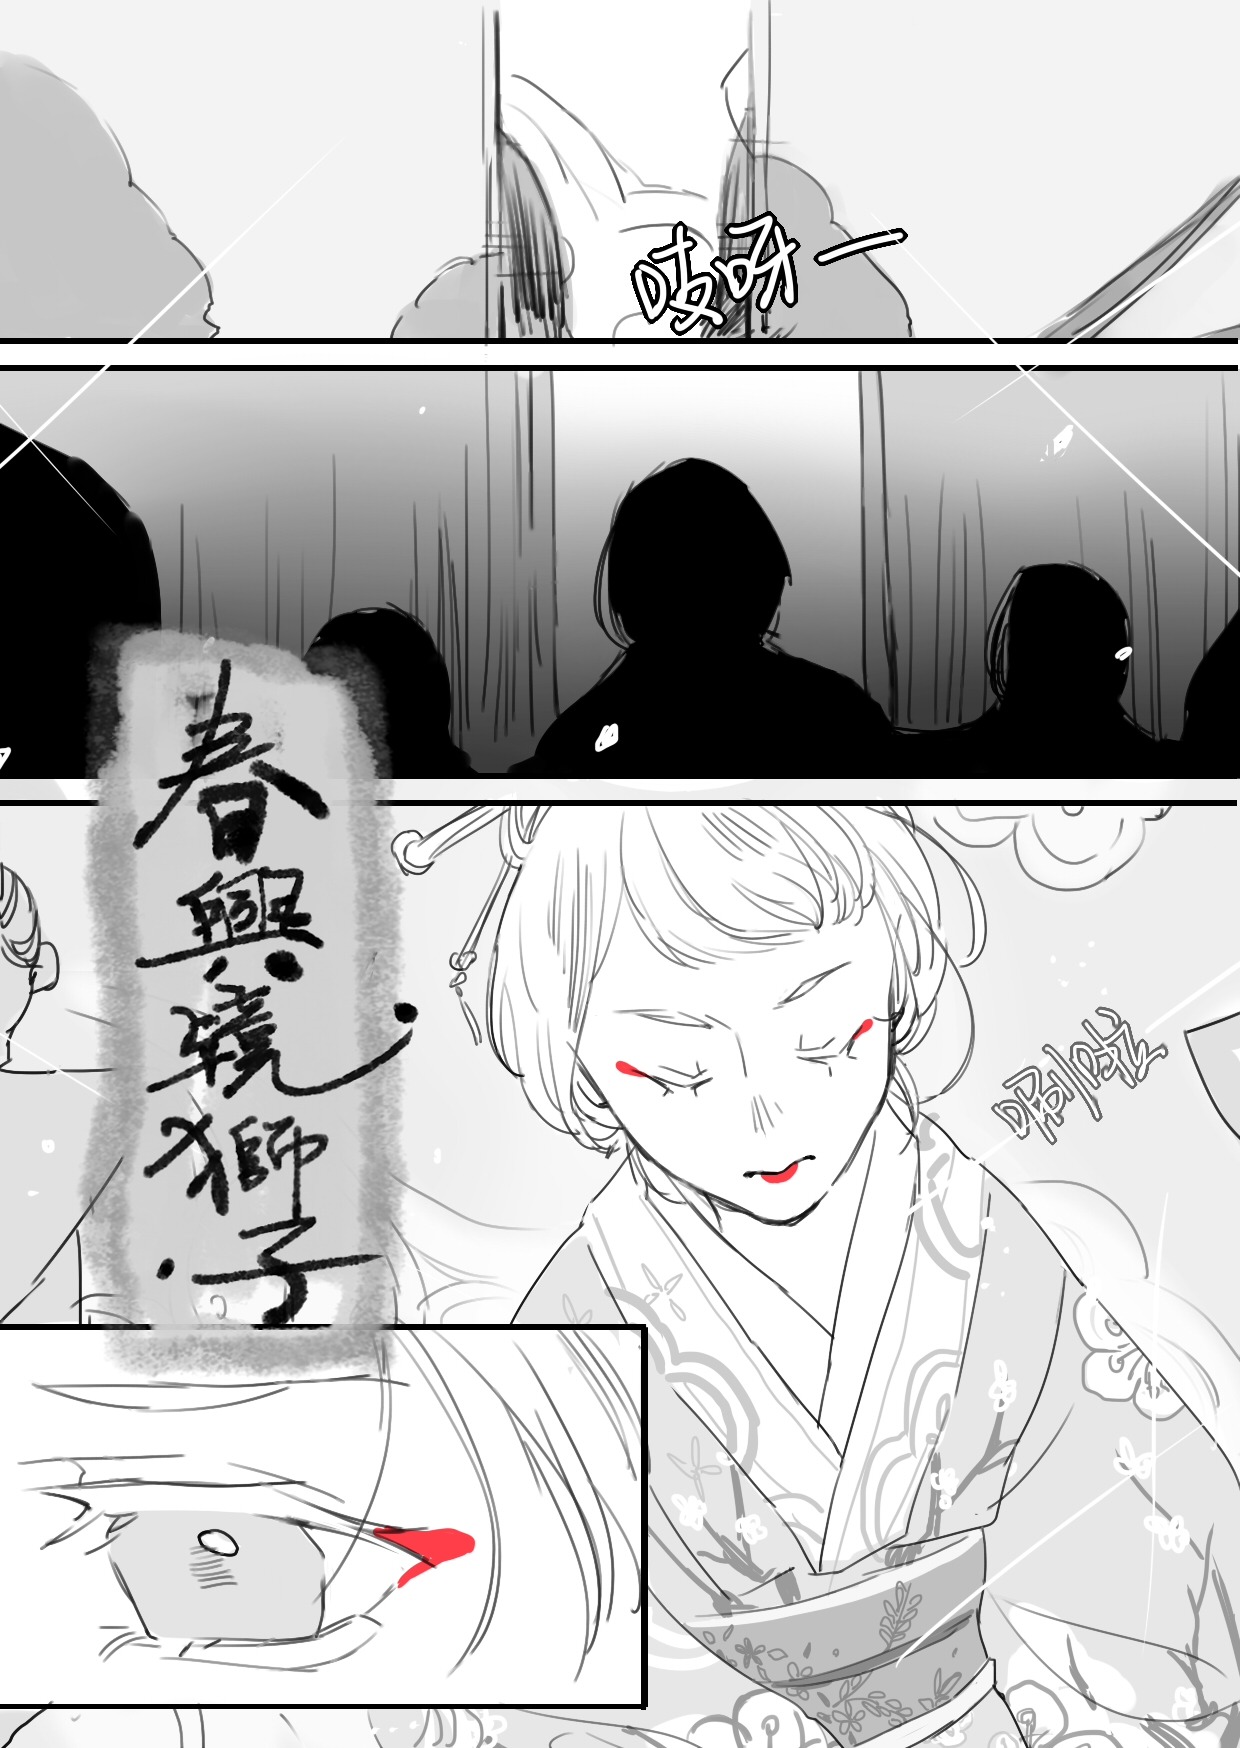 summerleto: Kabuki AU~1 Translating this into English with @summerleto‘s permission!